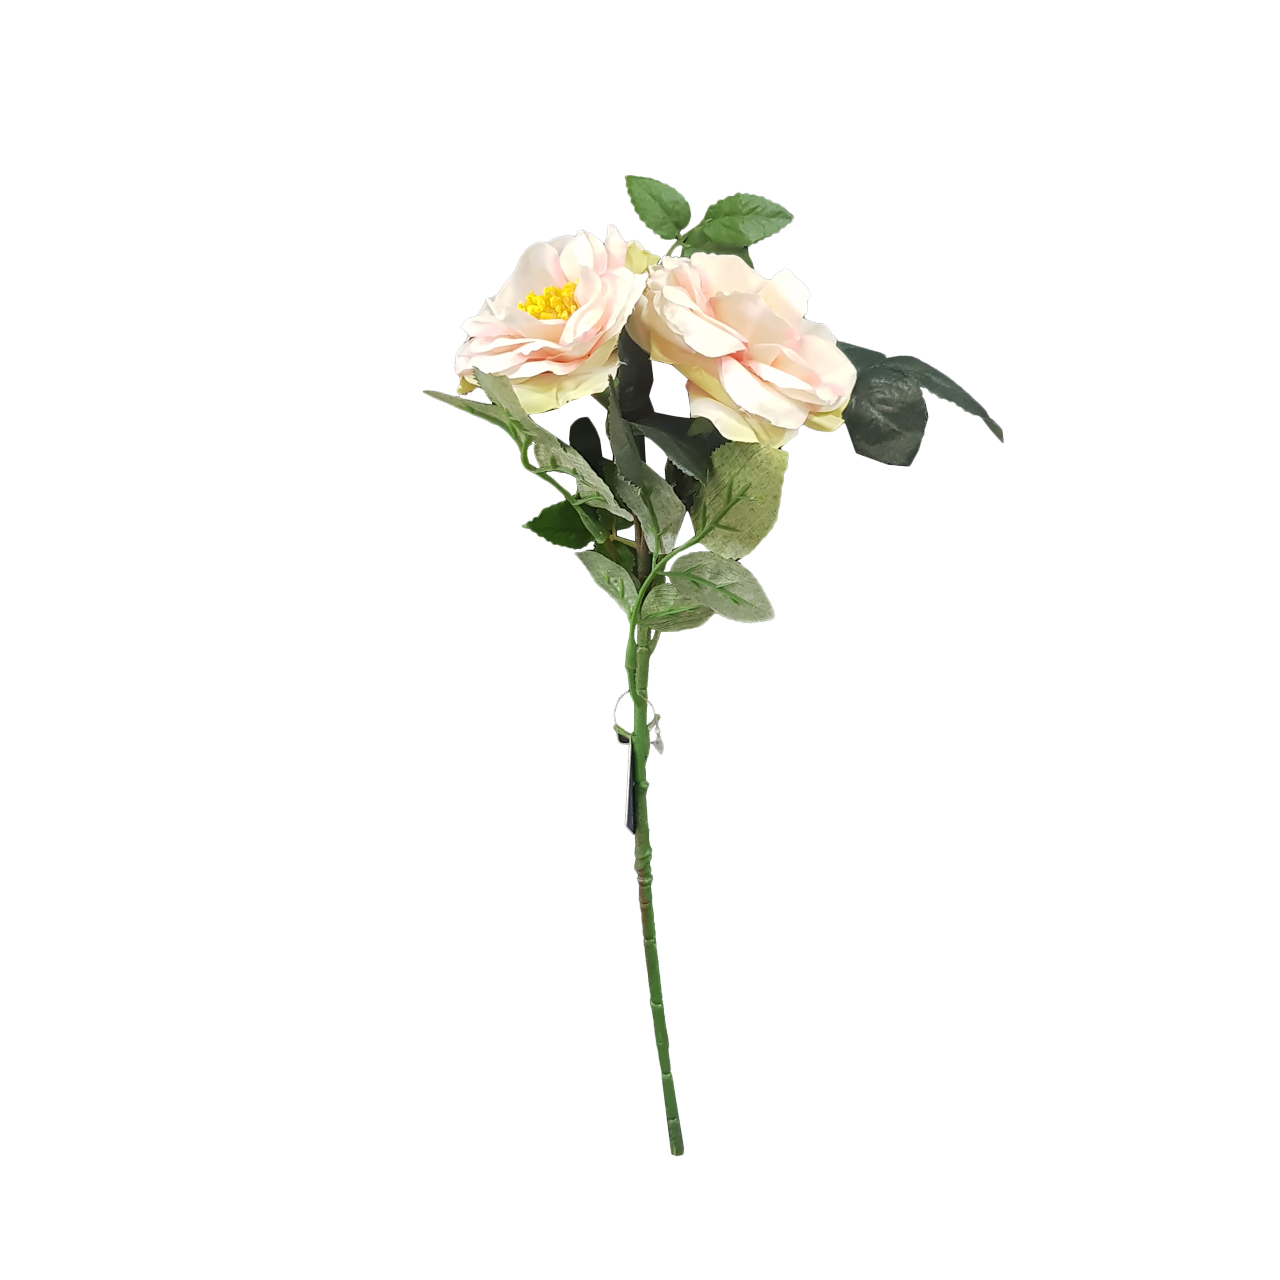 نکته خرید - قیمت روز گل مصنوعی مدل گل محمدی کد 2 خرید